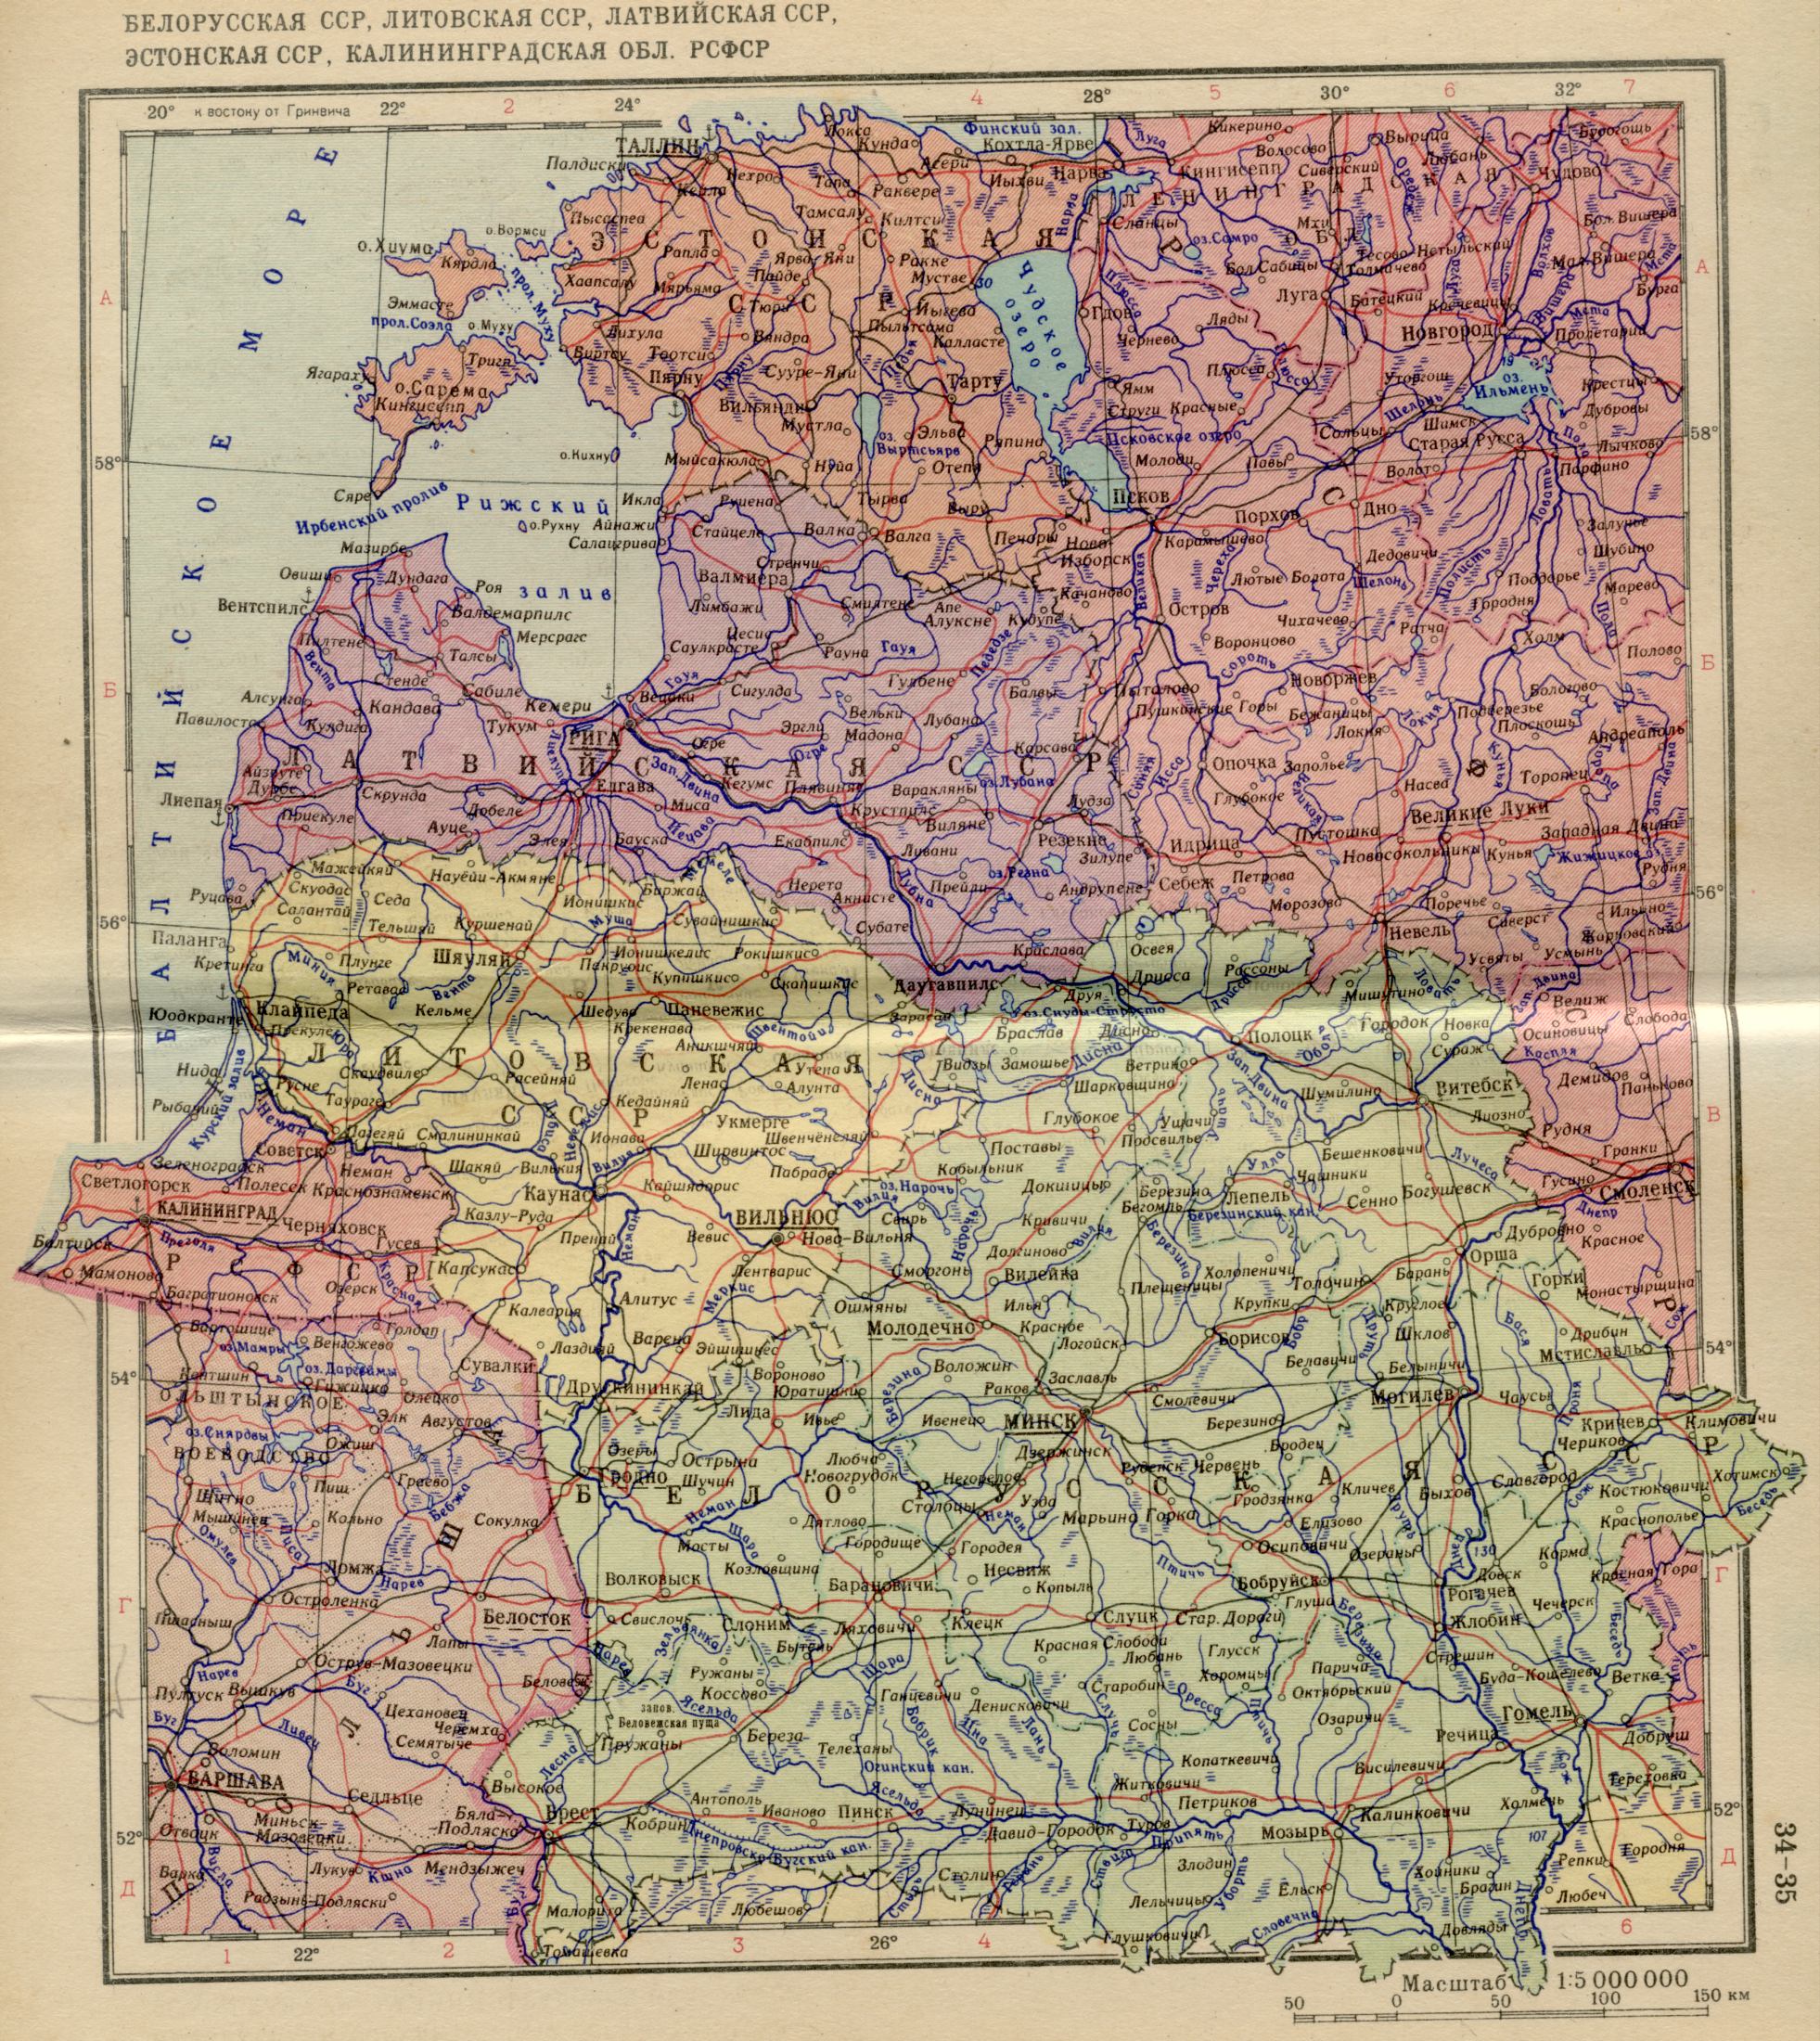 1956 год. Полтитческая карта Европы - Белорусская ССР, Калининградская область РСФСР в 1956 году. Скачать бесплатно 